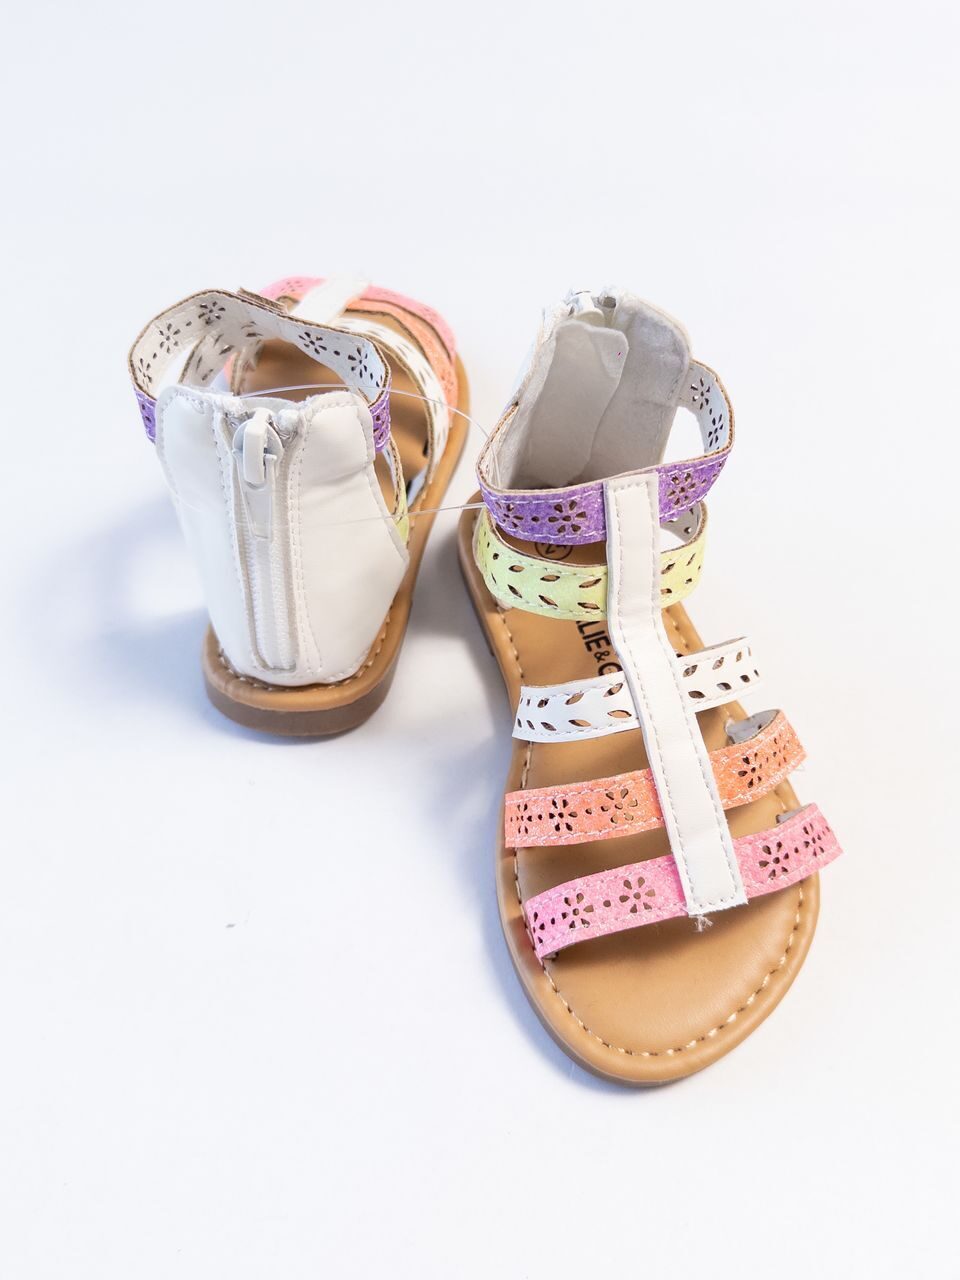 Босоножки для девочки сзади на молнии цвет белый/салатовый/розовый размер обуви 24 длина стельки 13.5 см KIABI (маломерят)